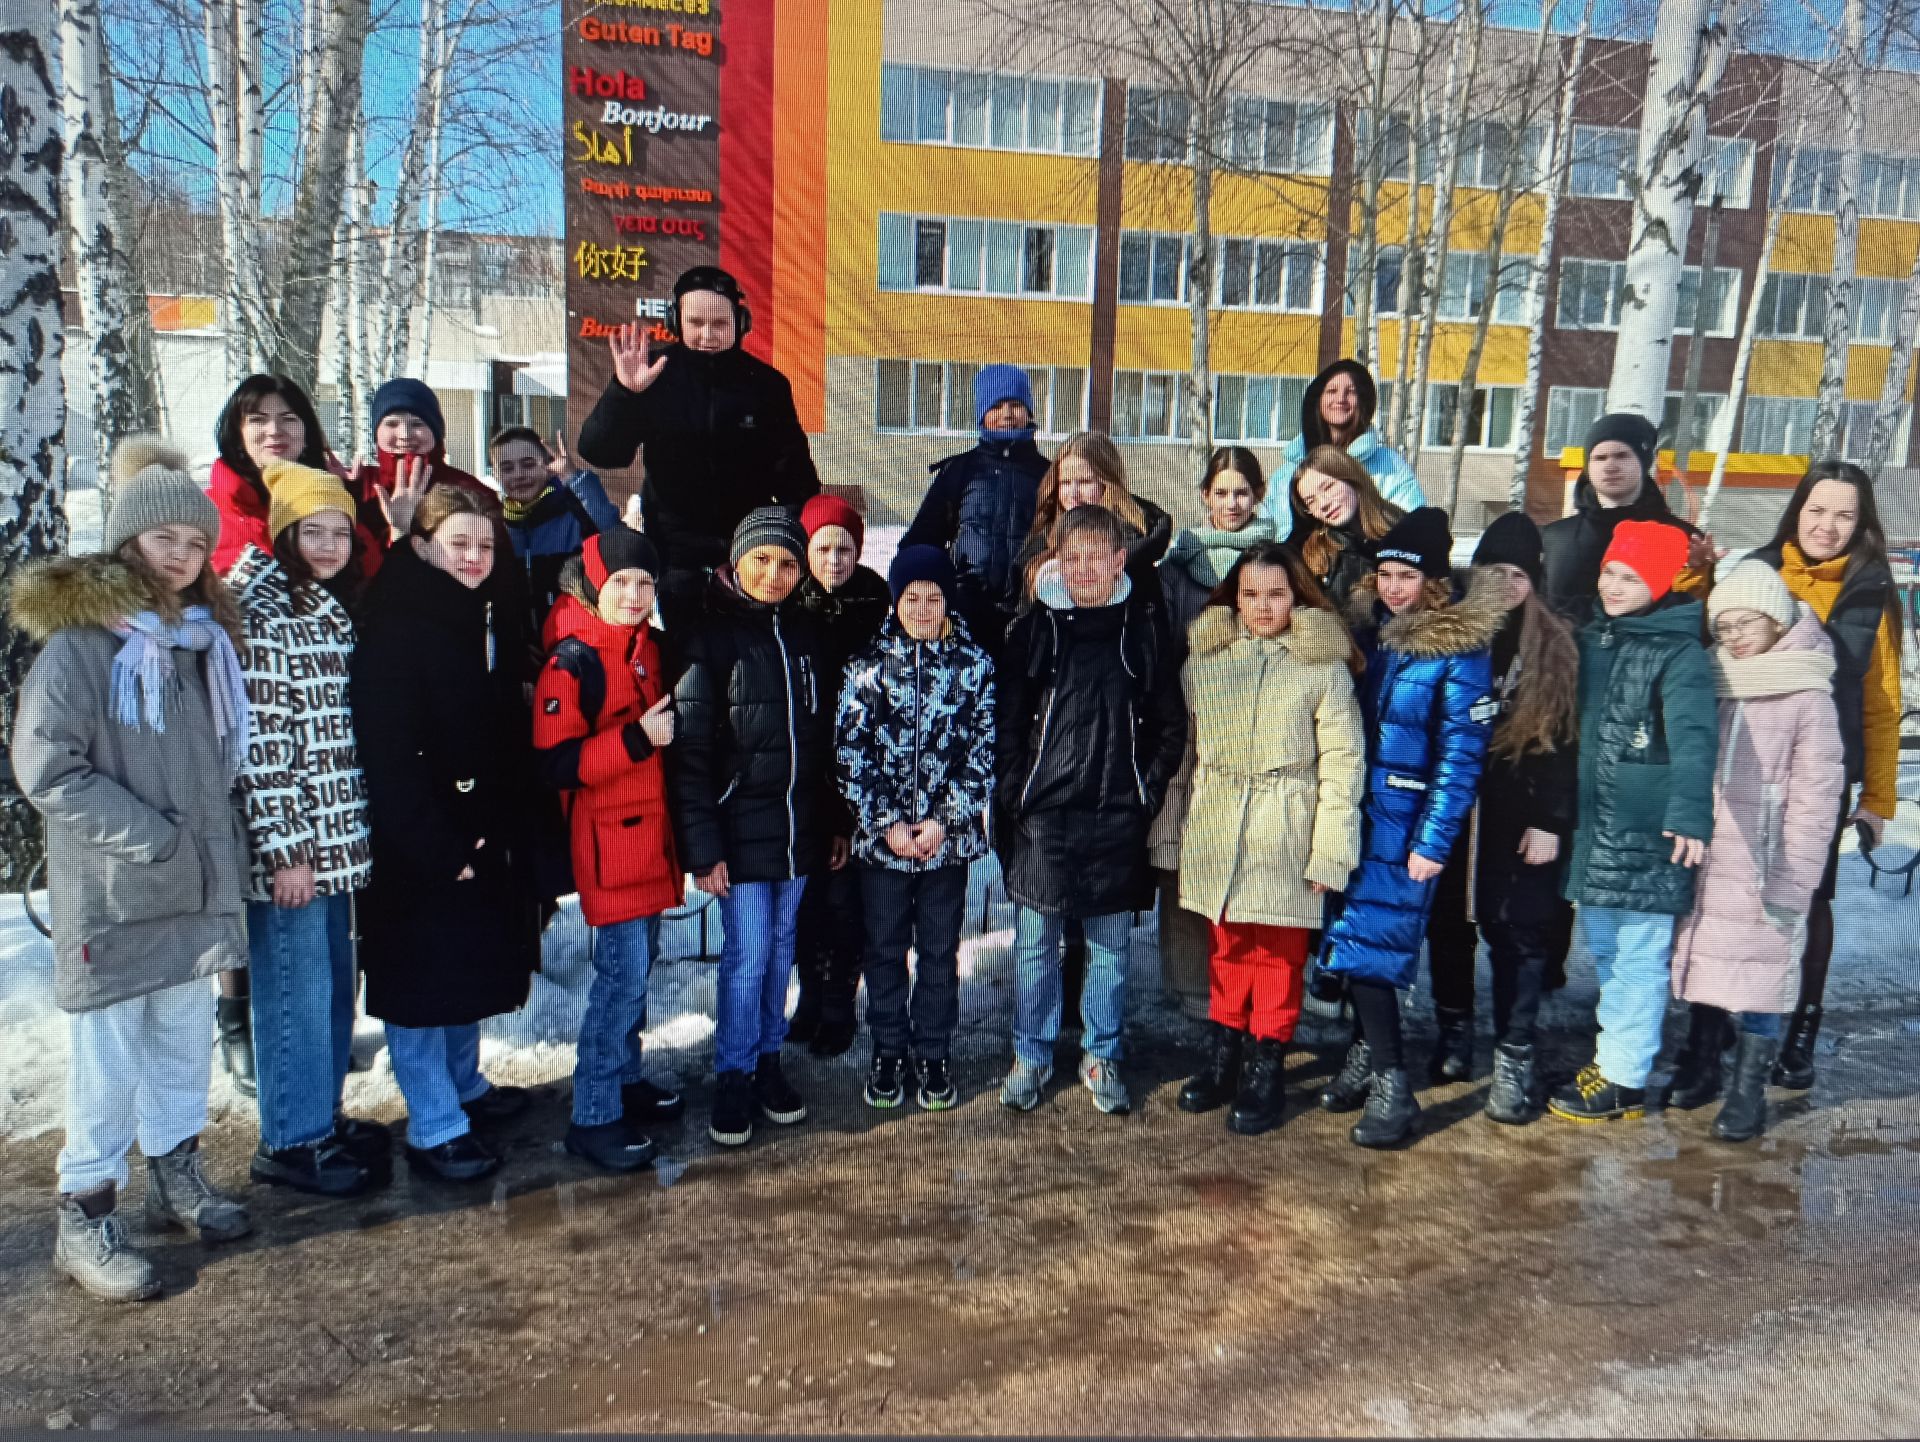 Чистопольские школьники приняли участие в зональном театральном конкурсе на английском языке